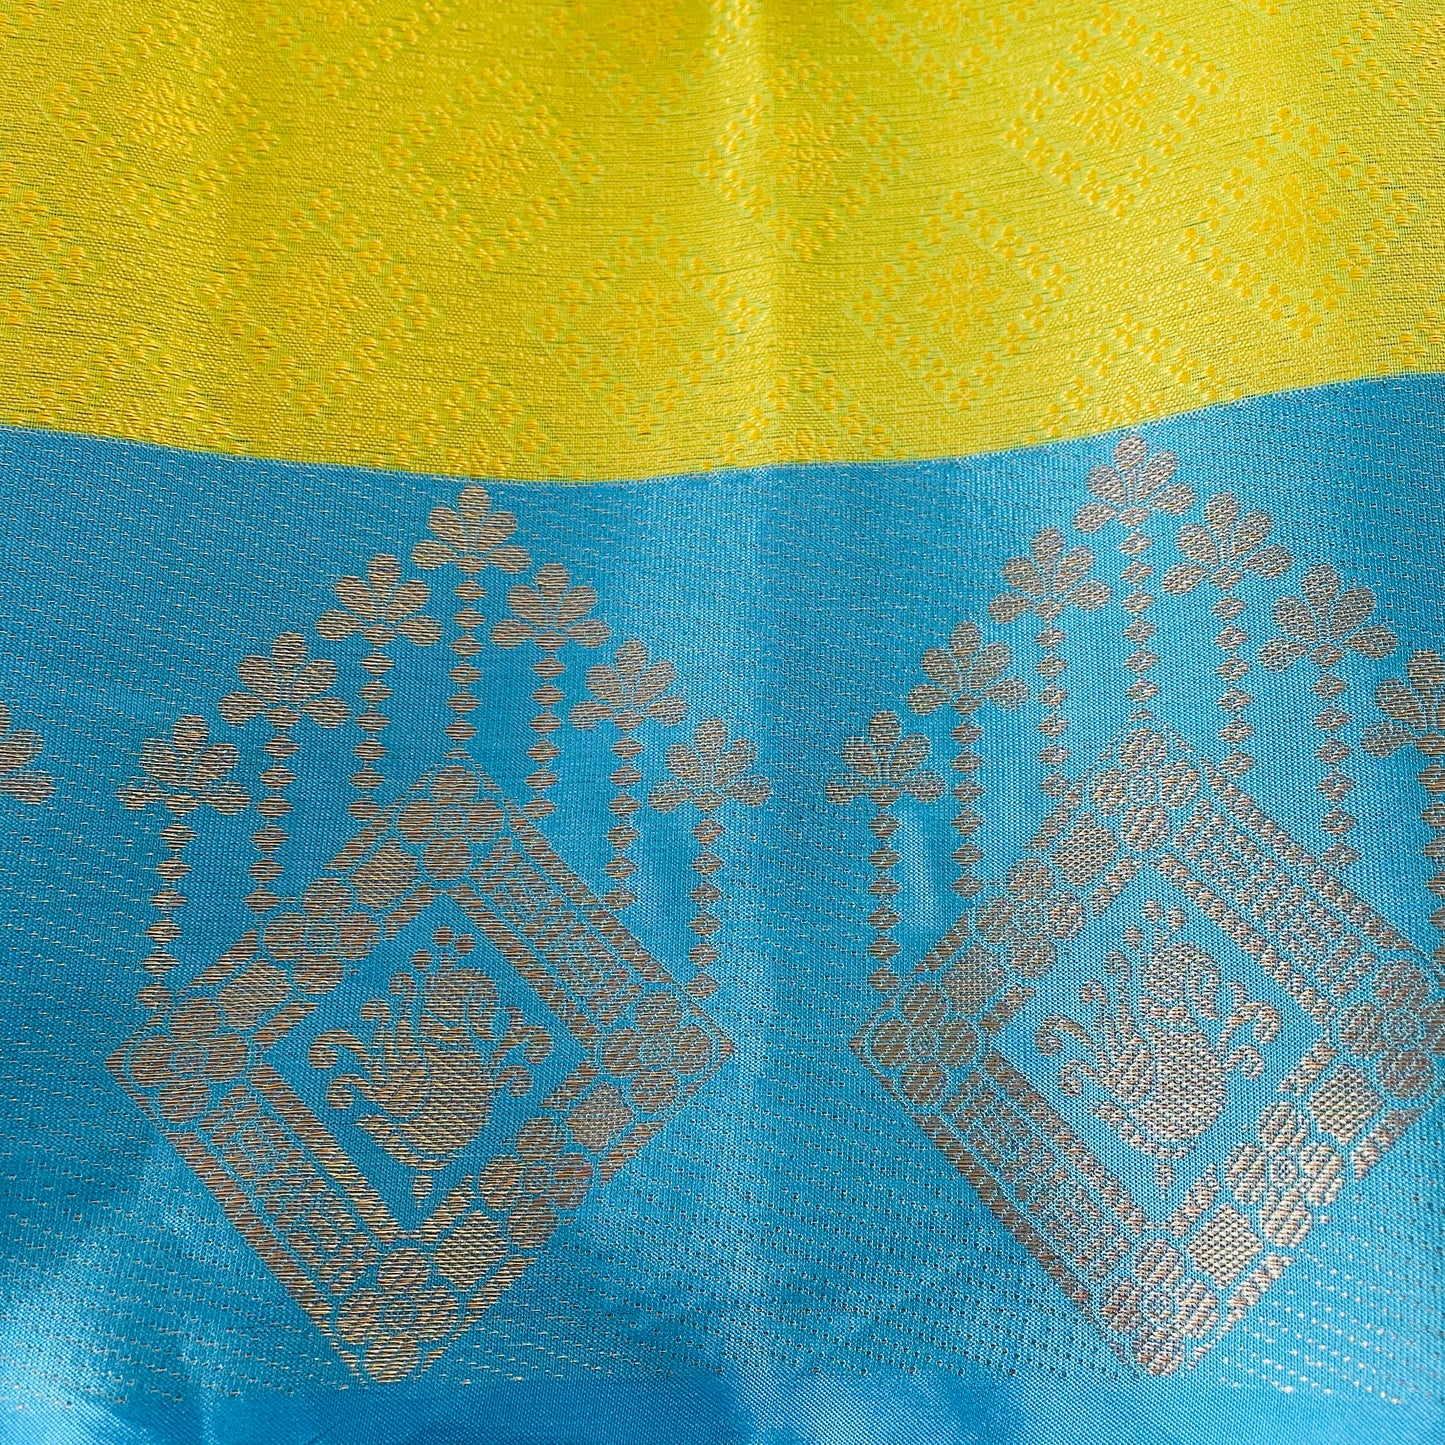 Kora Silk Banarasi Saree - Sea Green and Sea Blue with golden jari